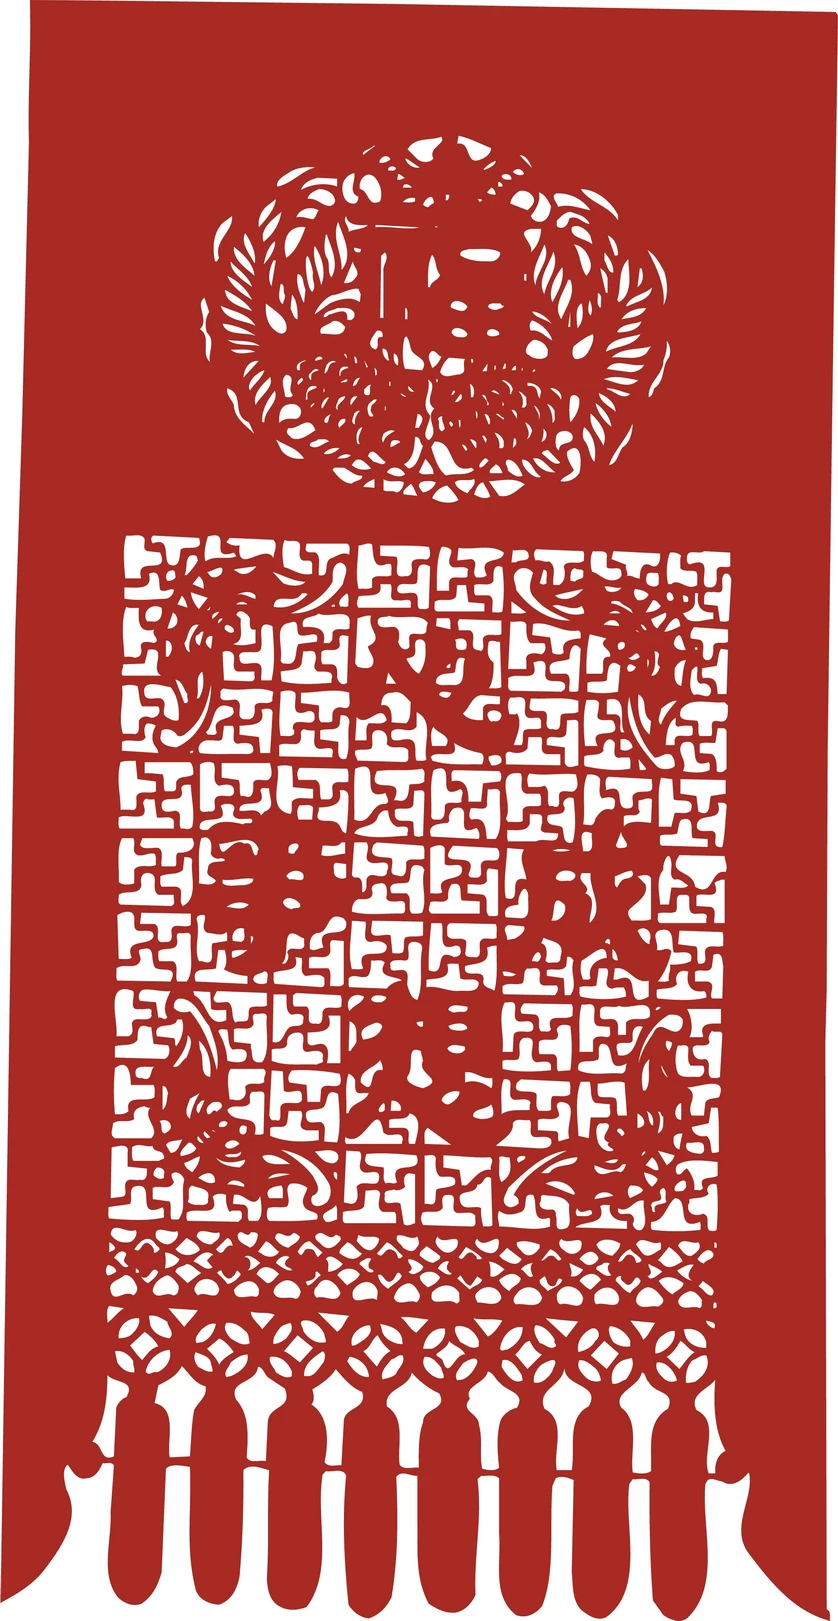 中国风中式传统喜庆民俗人物动物窗花剪纸插画边框AI矢量PNG素材【1956】